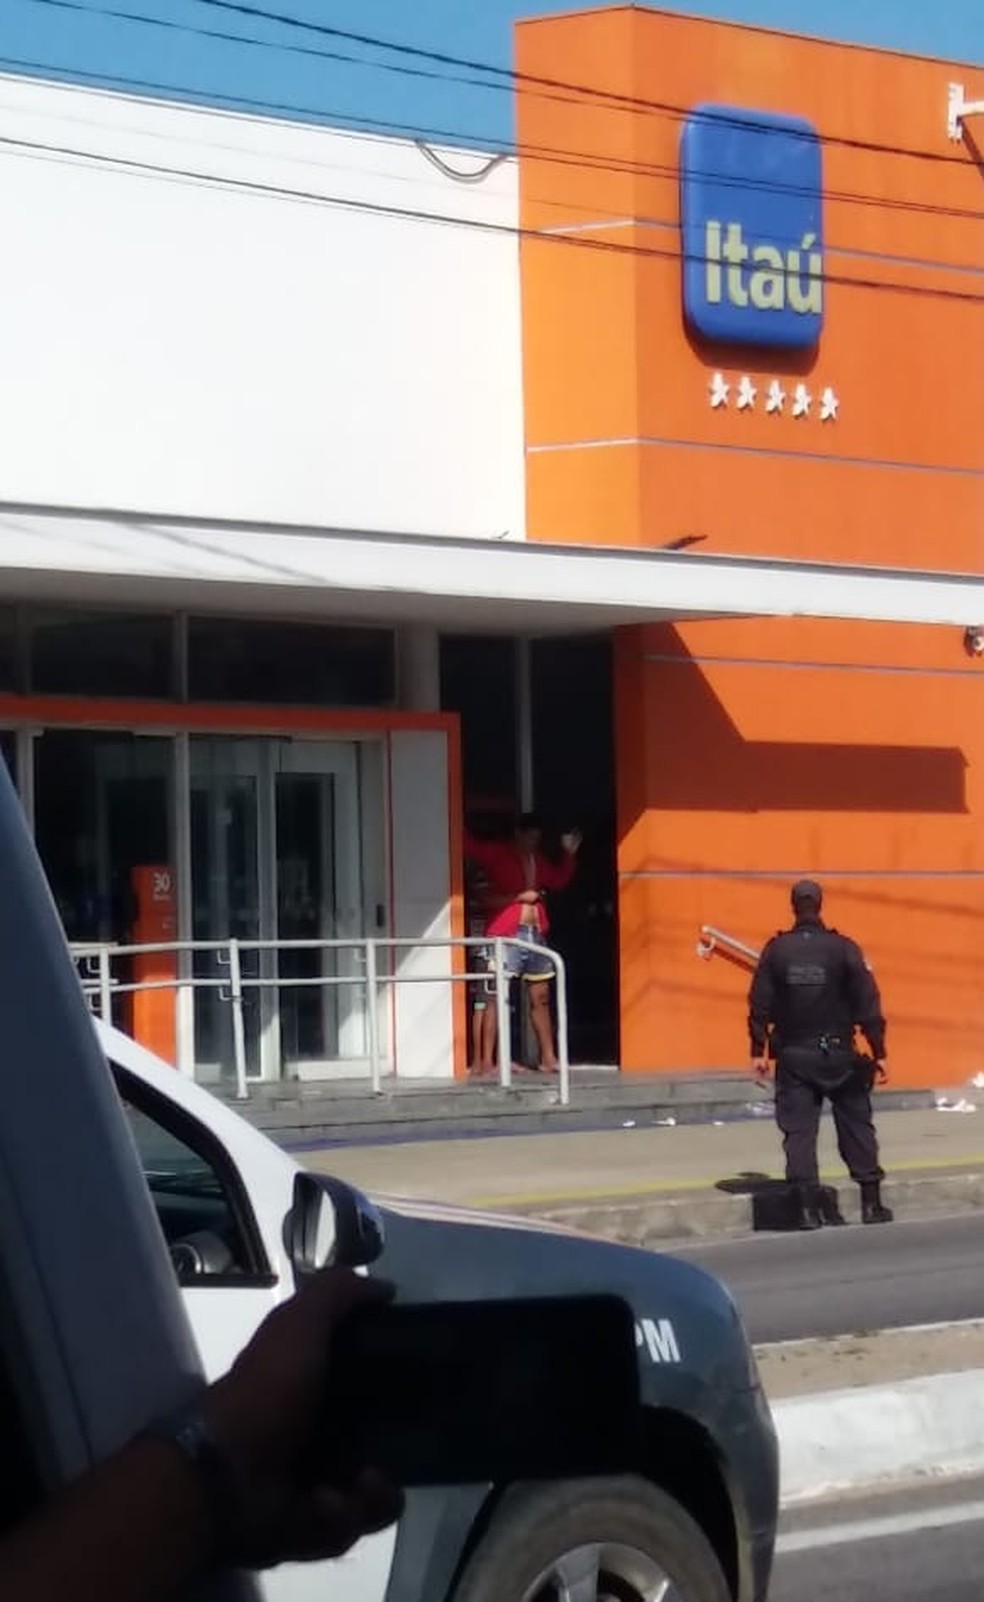 Assaltante fez um refÃ©m na frente da calÃ§ada do banco ItaÃº, na Zona Norte de Natal (Foto: PM/DivulgaÃ§Ã£o)